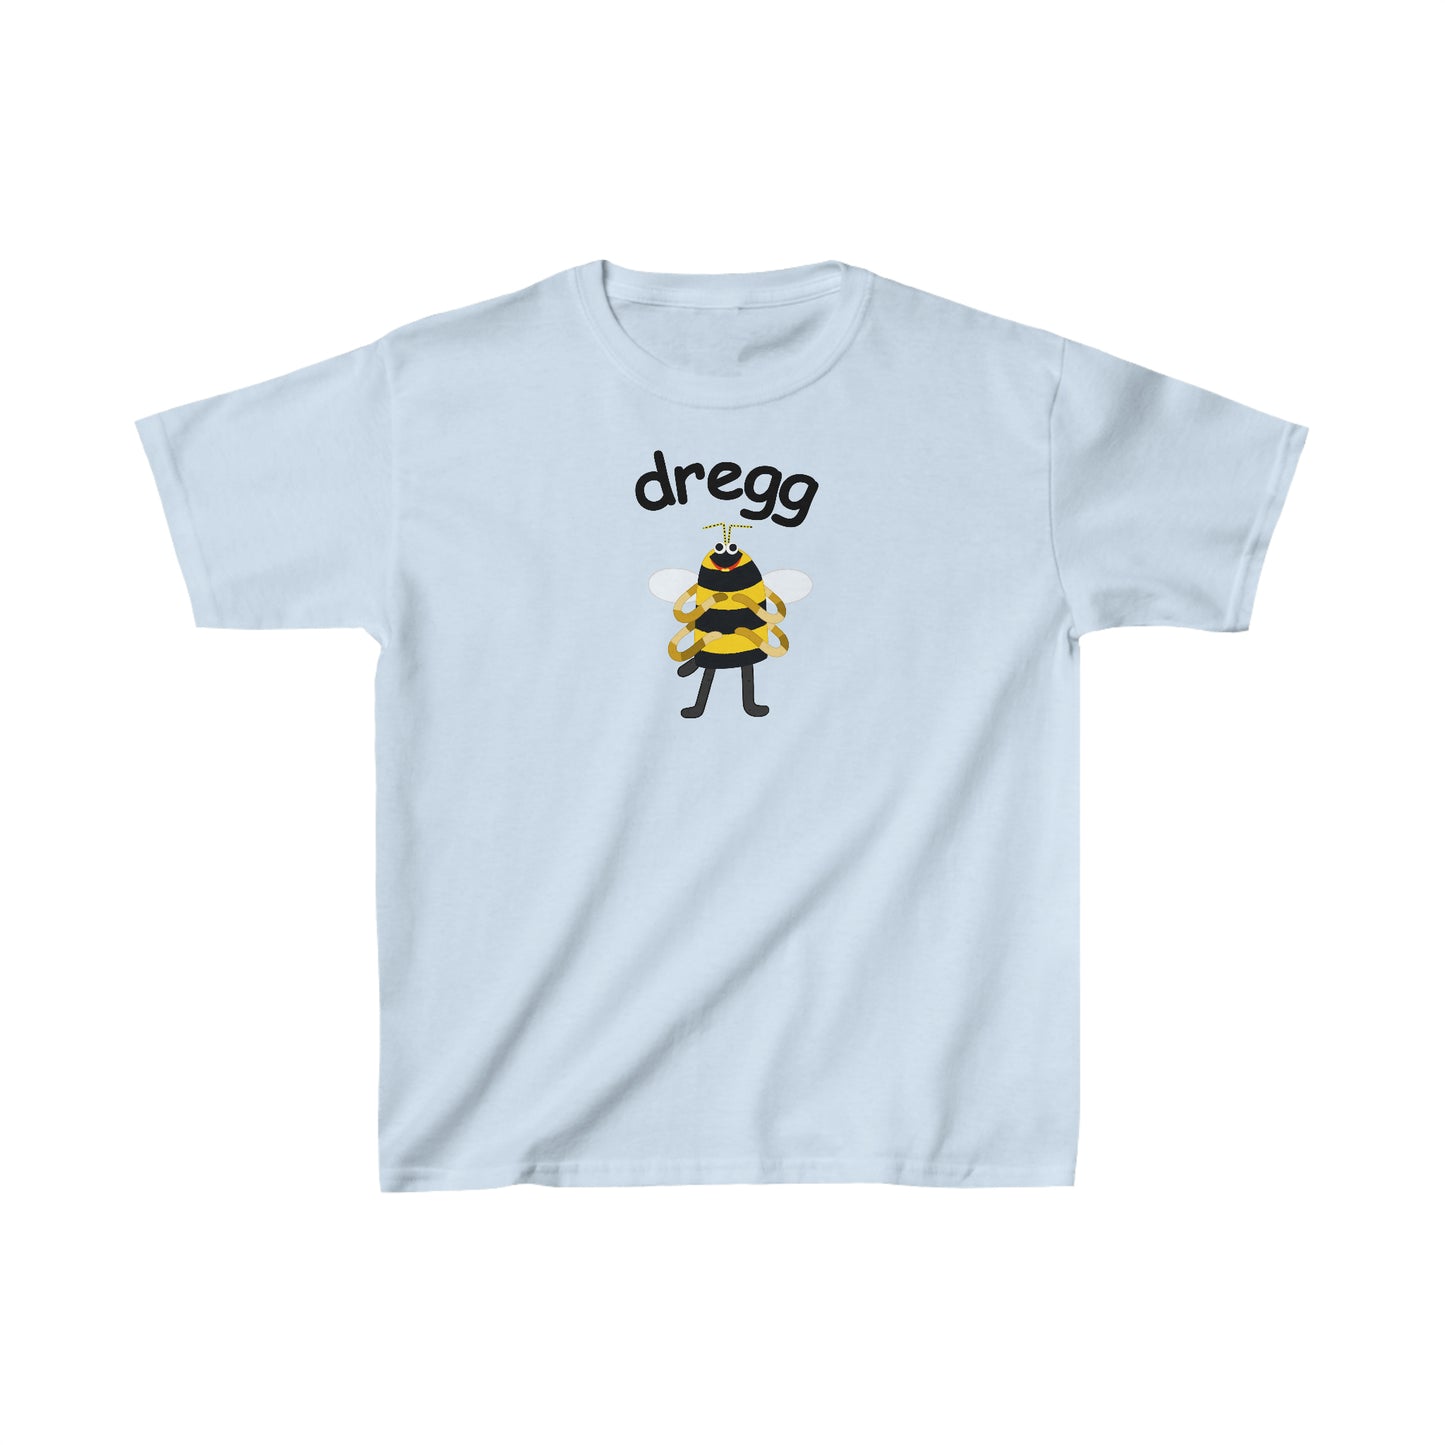 Dregg - Kid's Unisex Jersey Short Sleeve Tee